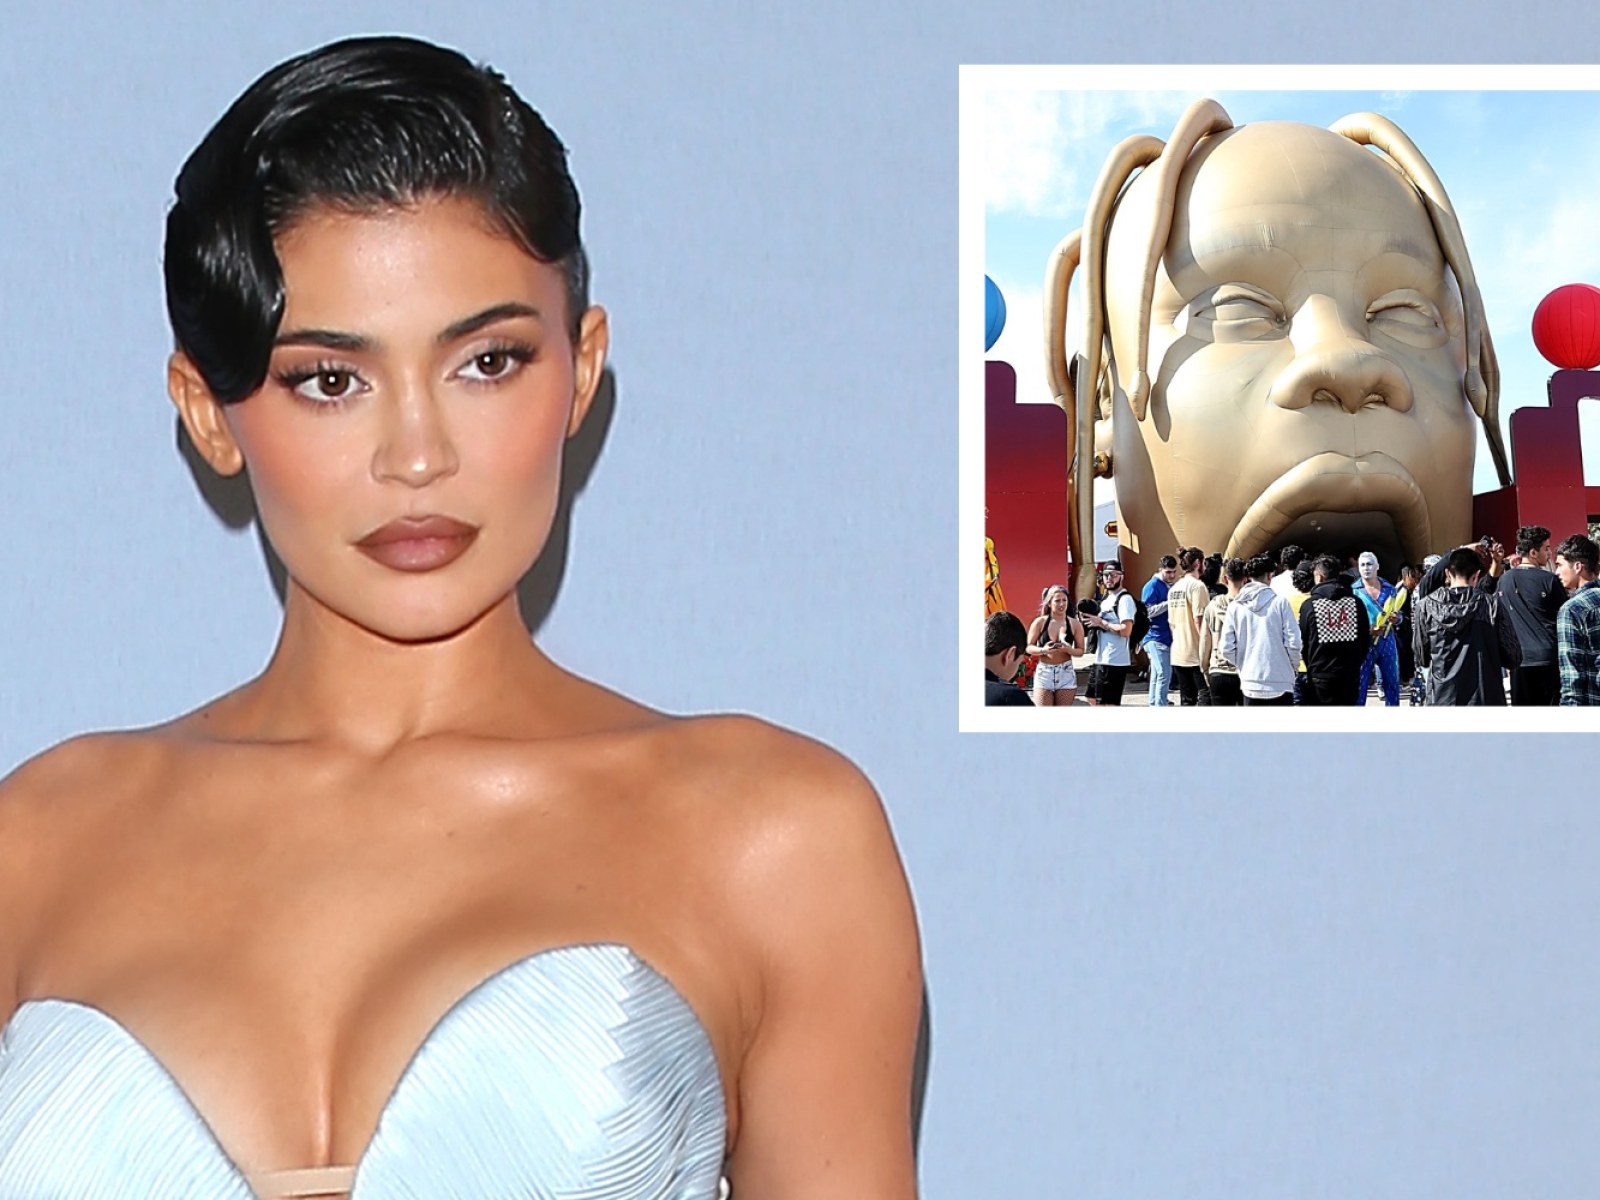 Kylie Jenner's Astroworld Nod at Kids' Party Slammed After Fatal Concert